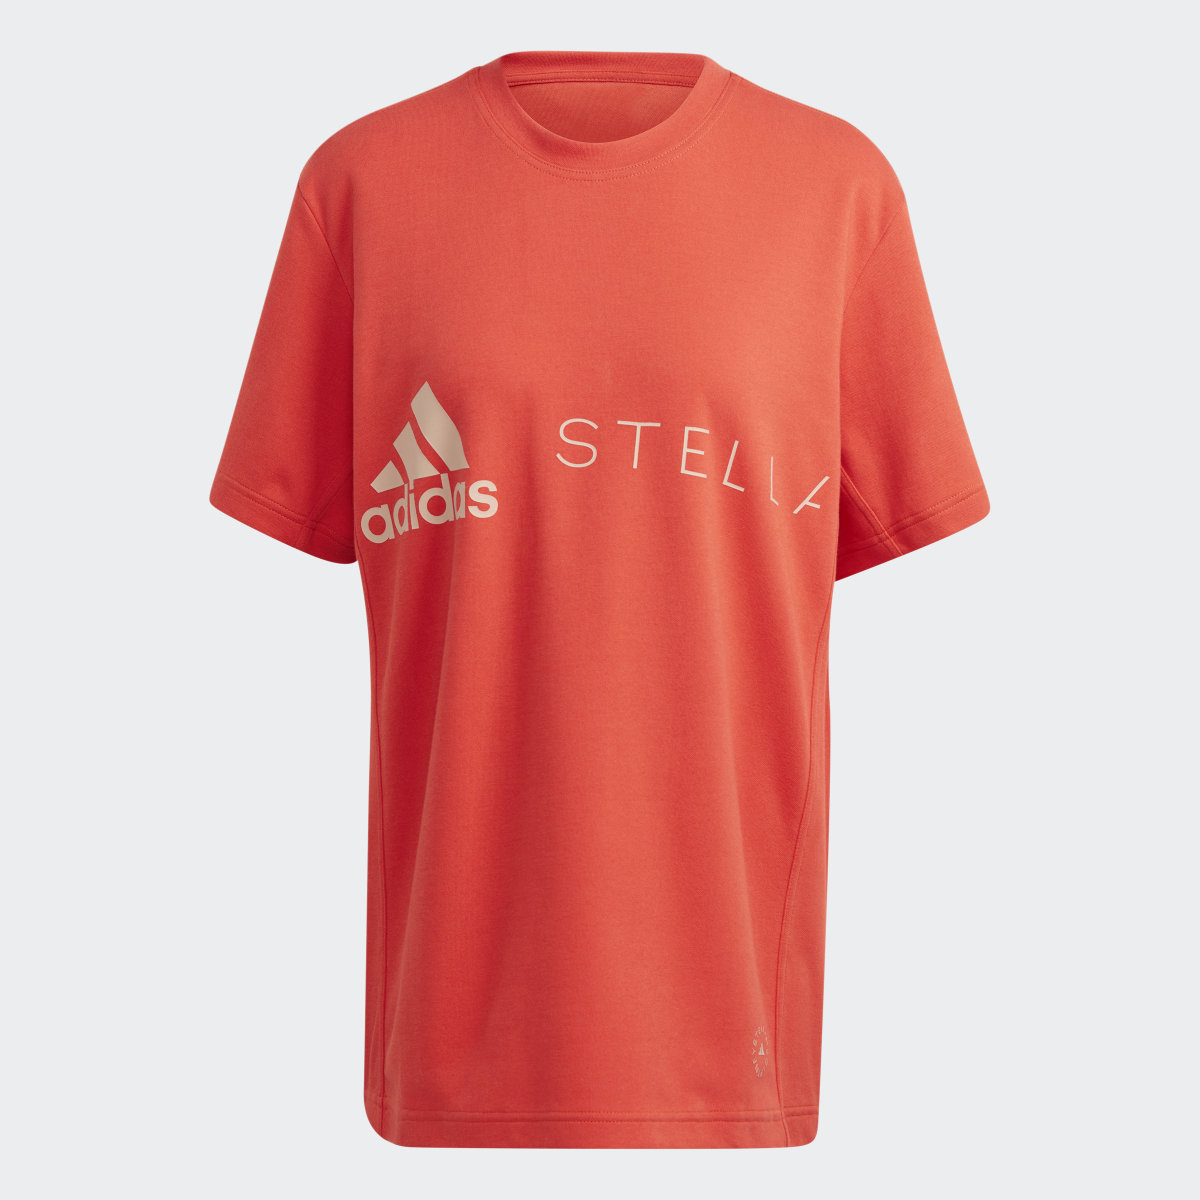 Adidas by Stella McCartney Logo Tee. 4